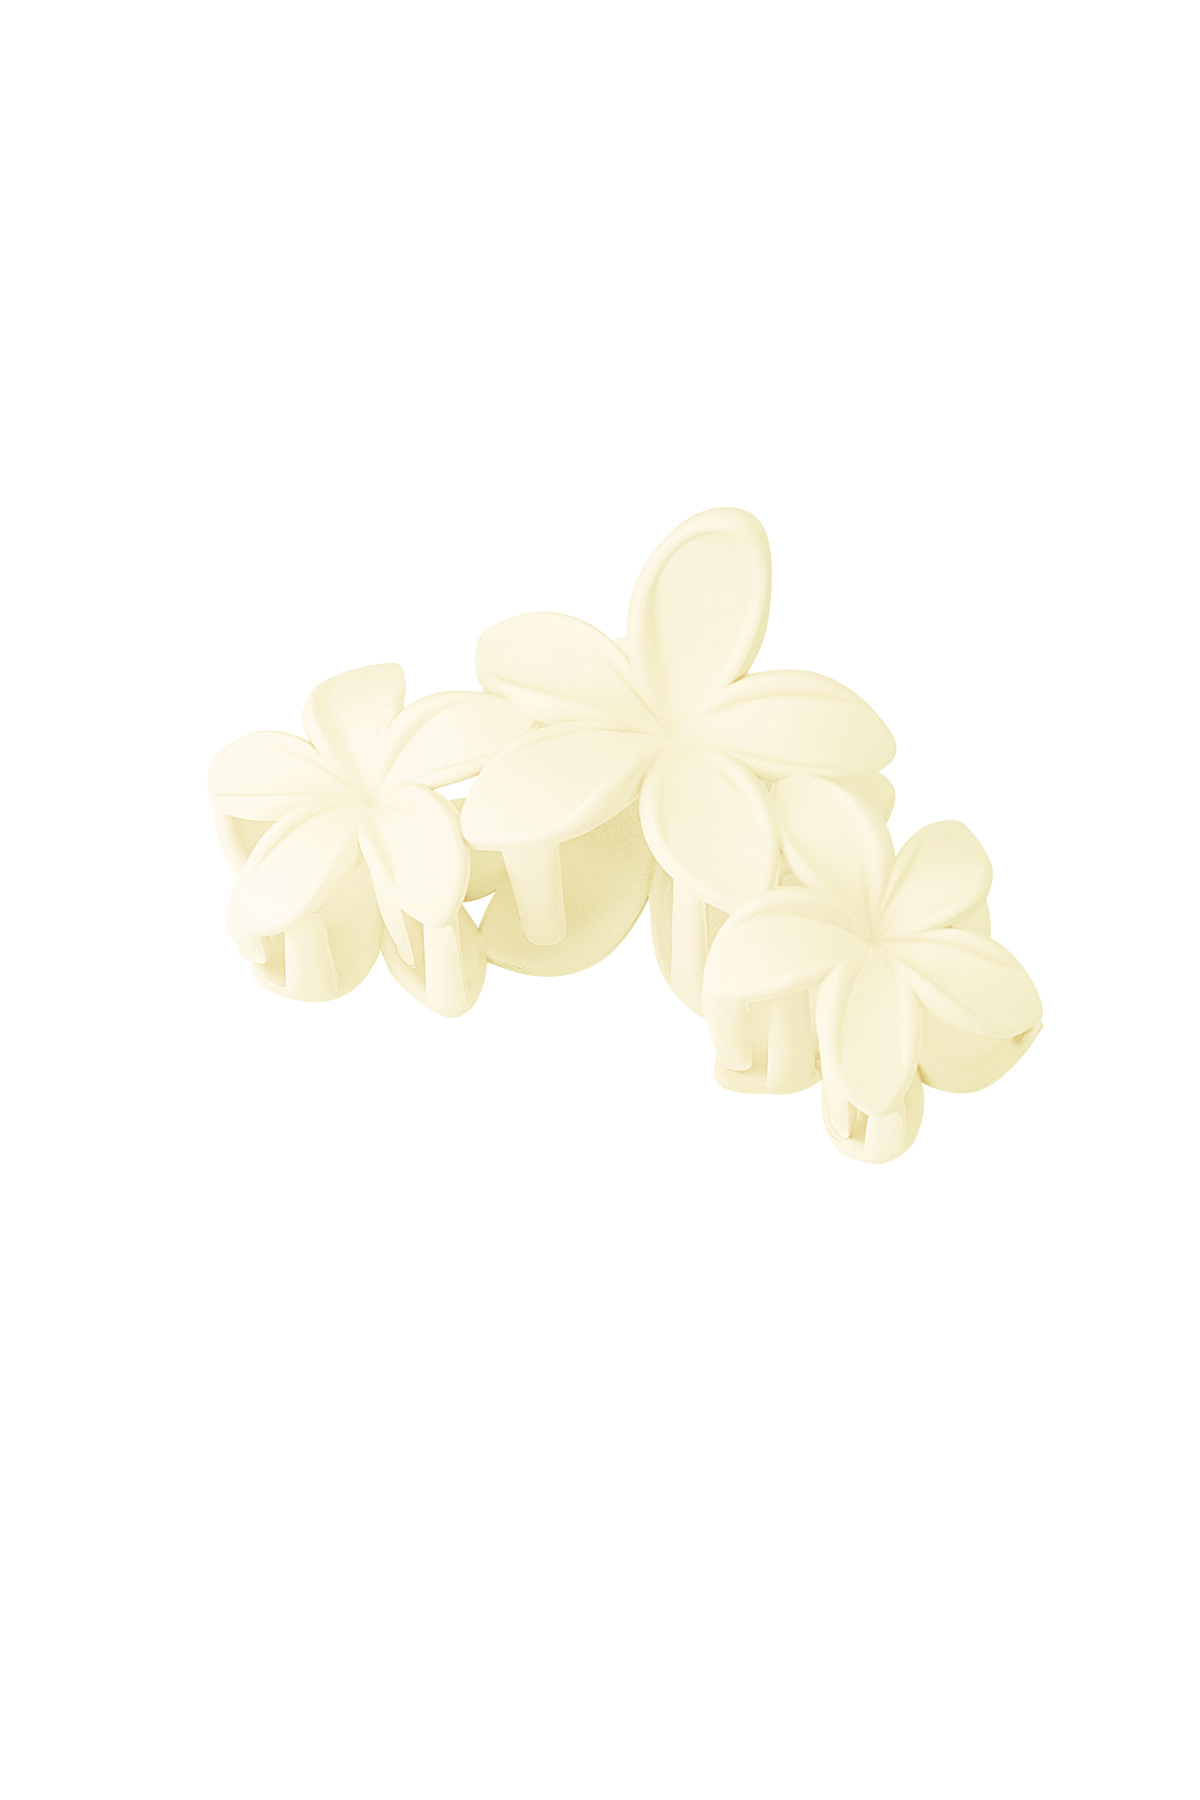 Haarspange mit großen Blumen – gebrochenes Weiß h5 